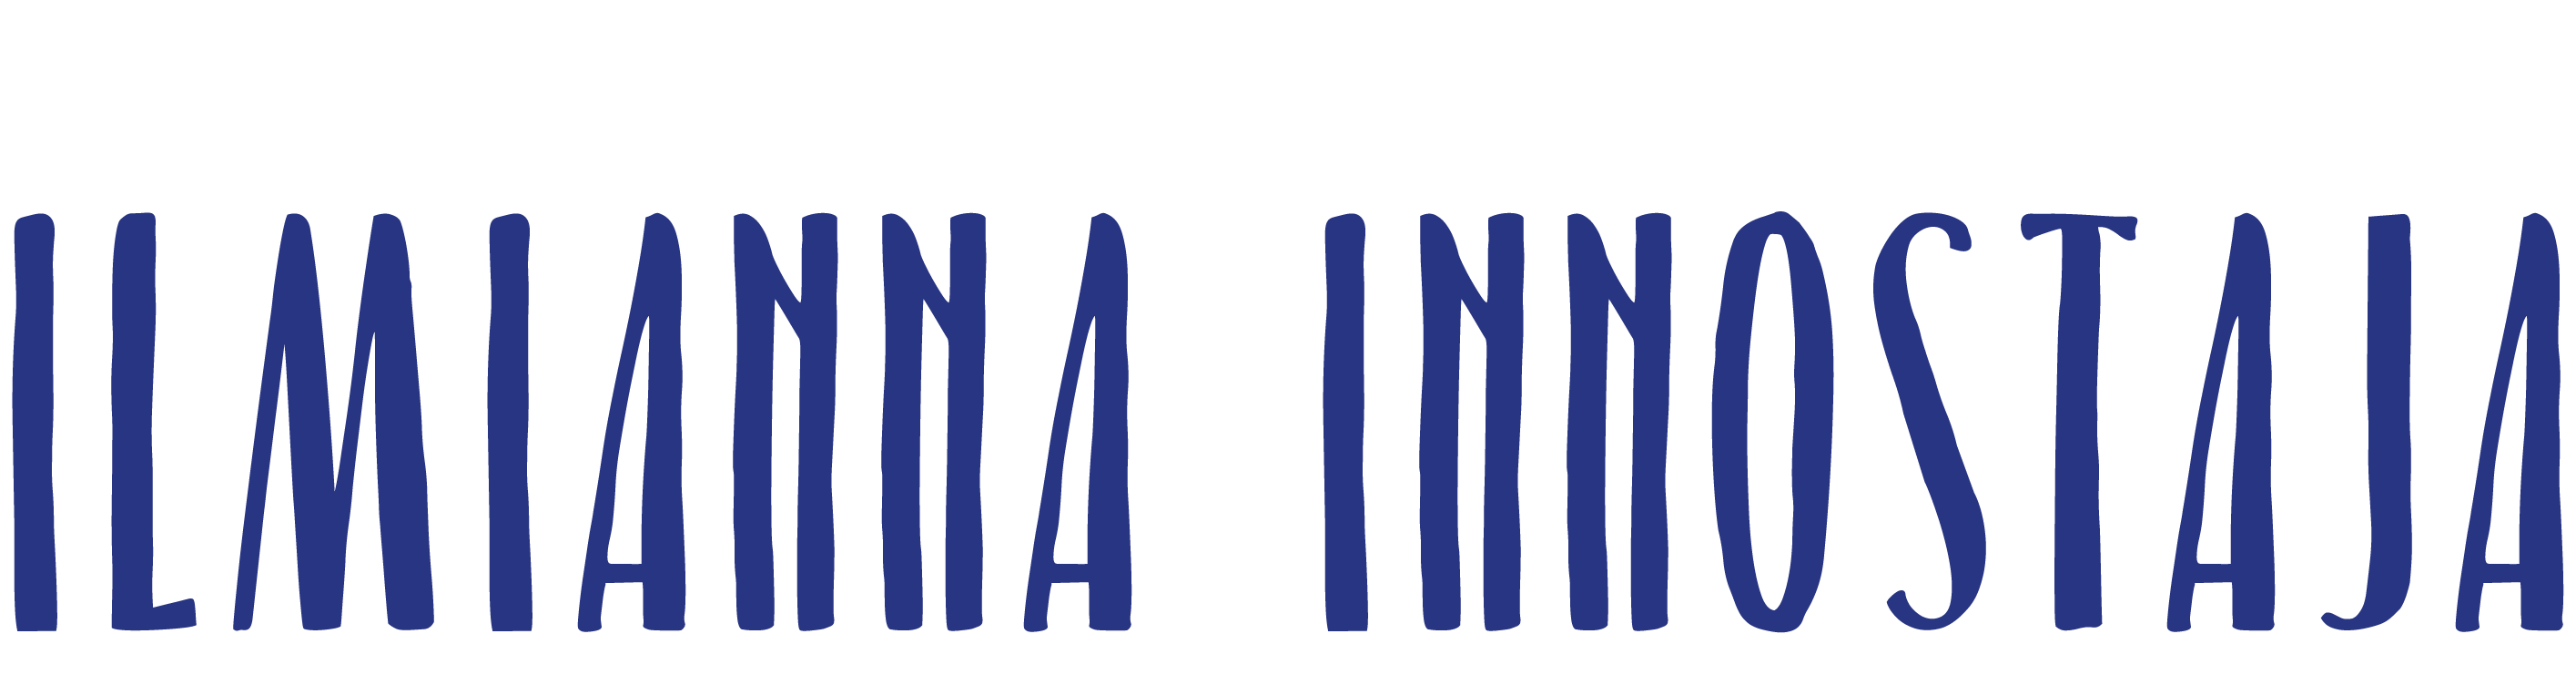 Logo / etusivulle